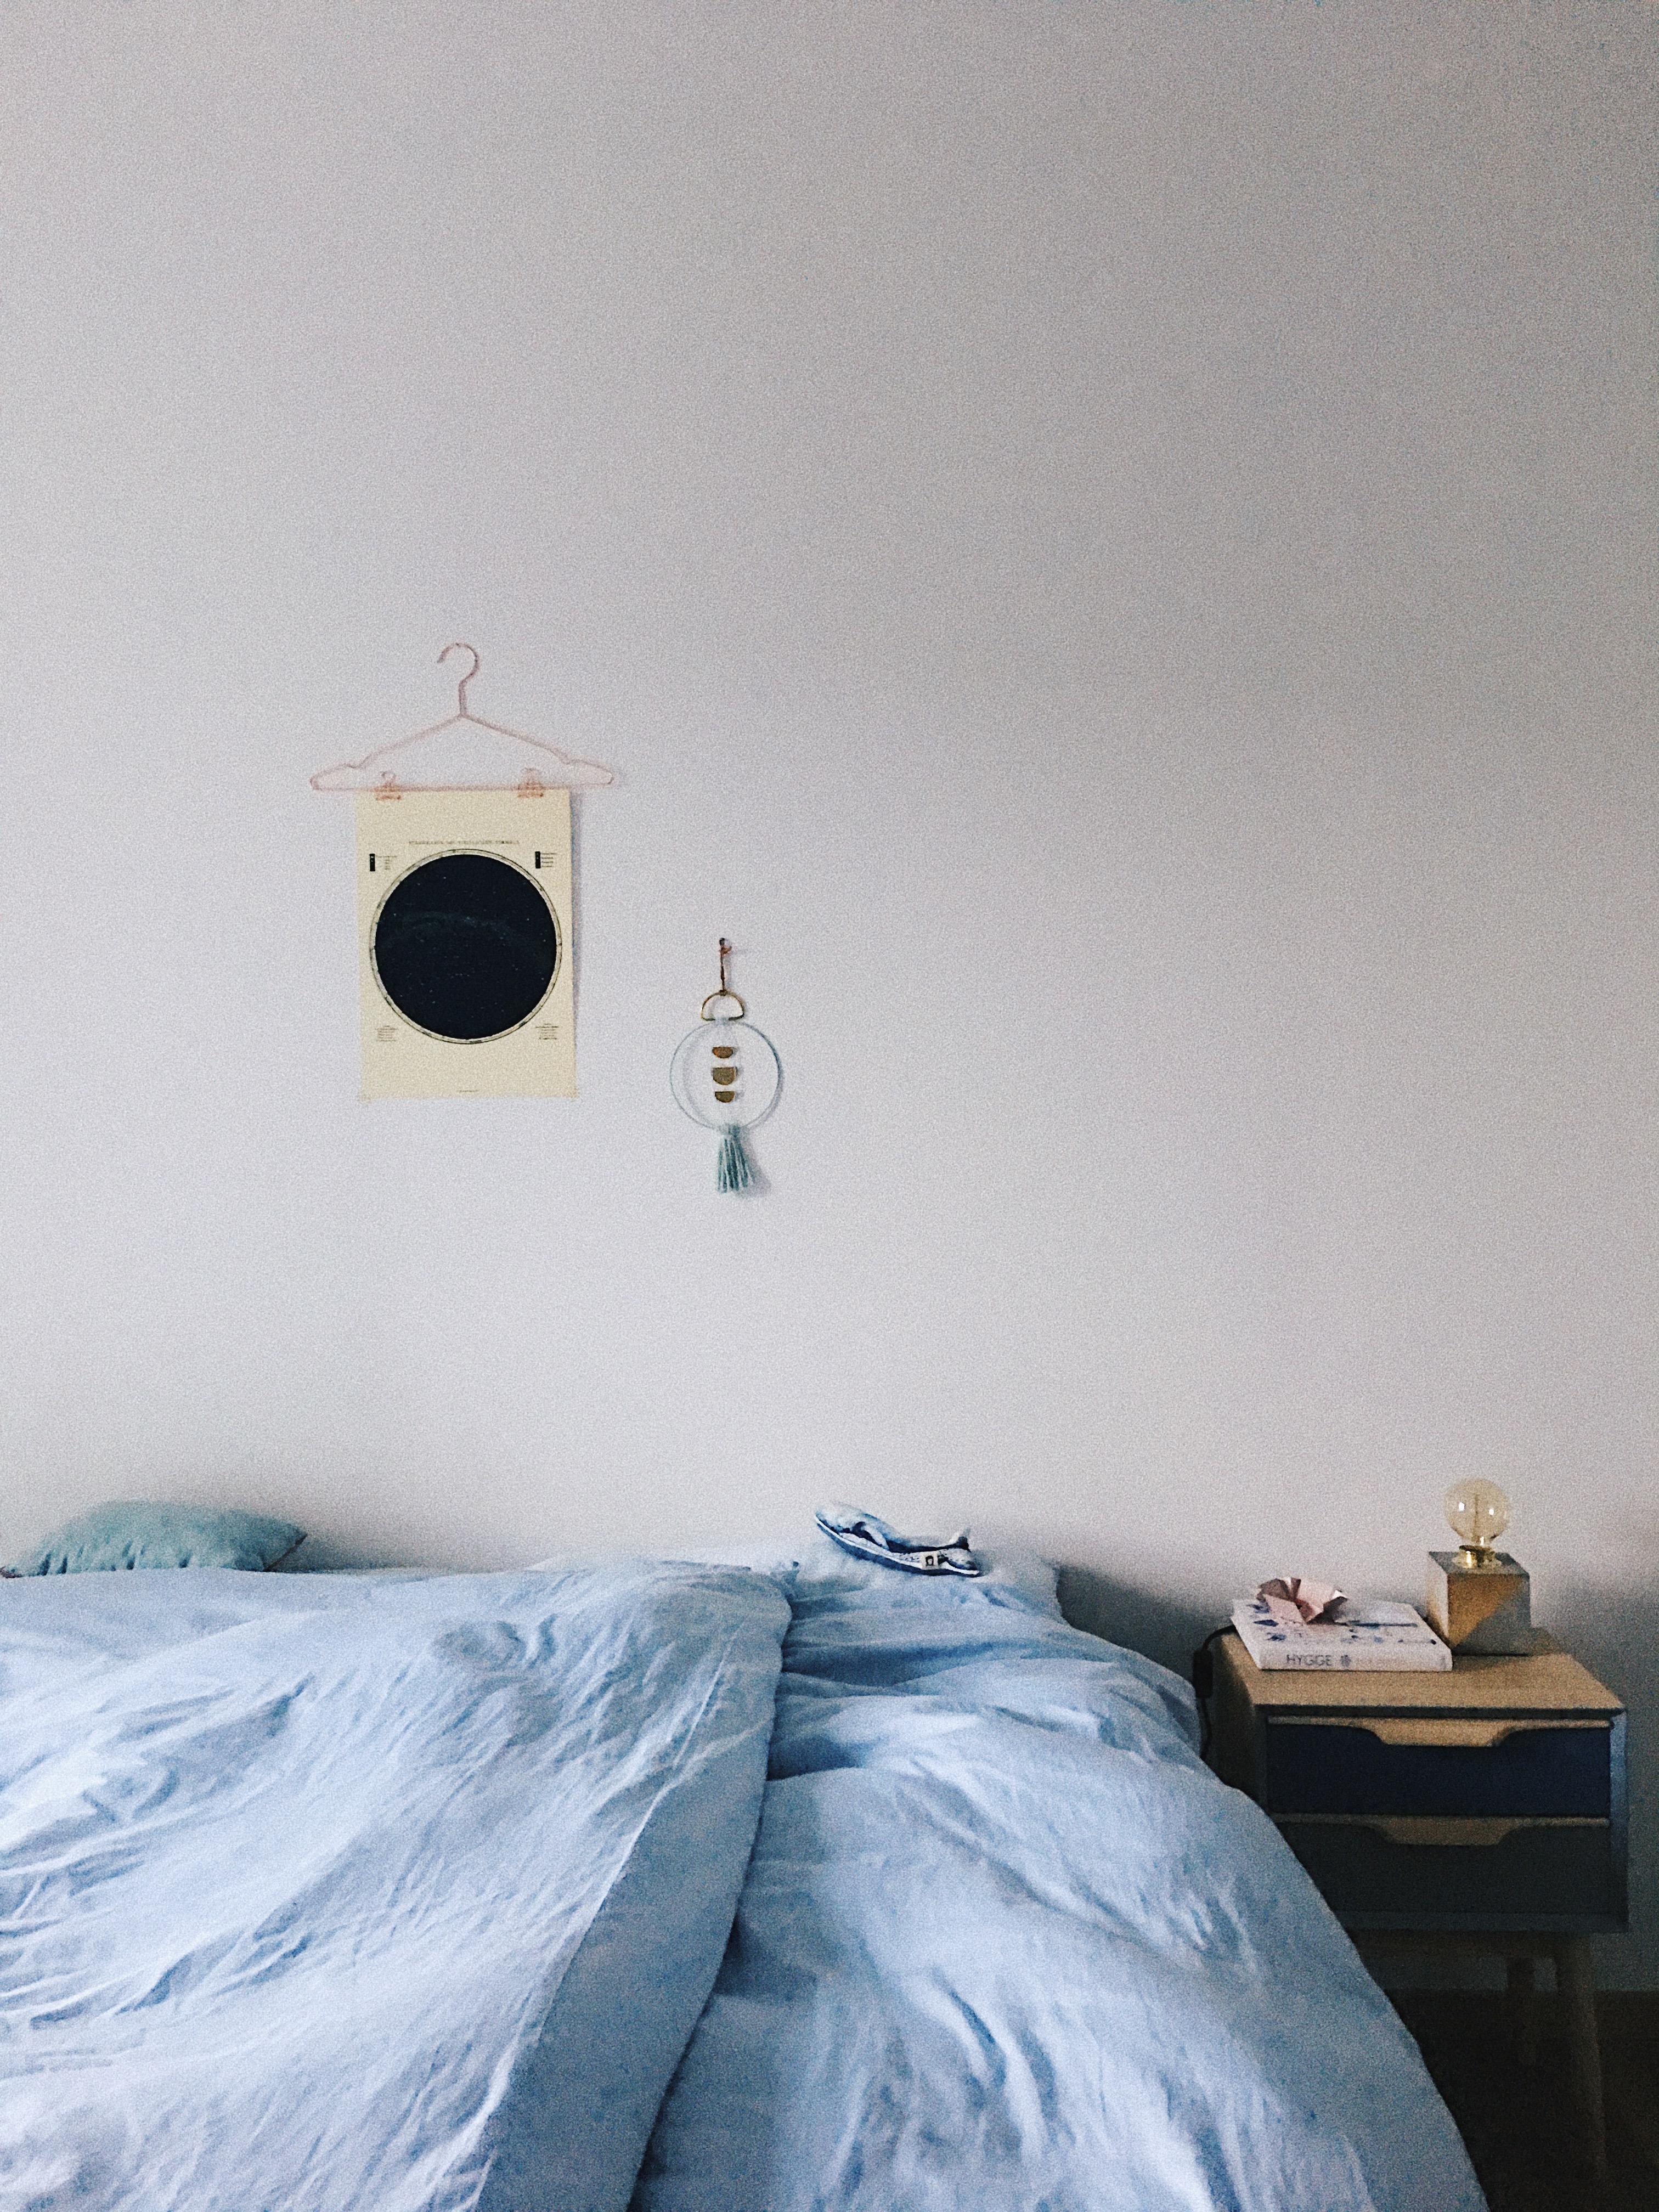 Schlafzimmer in hellblau.
#schlafzimmer